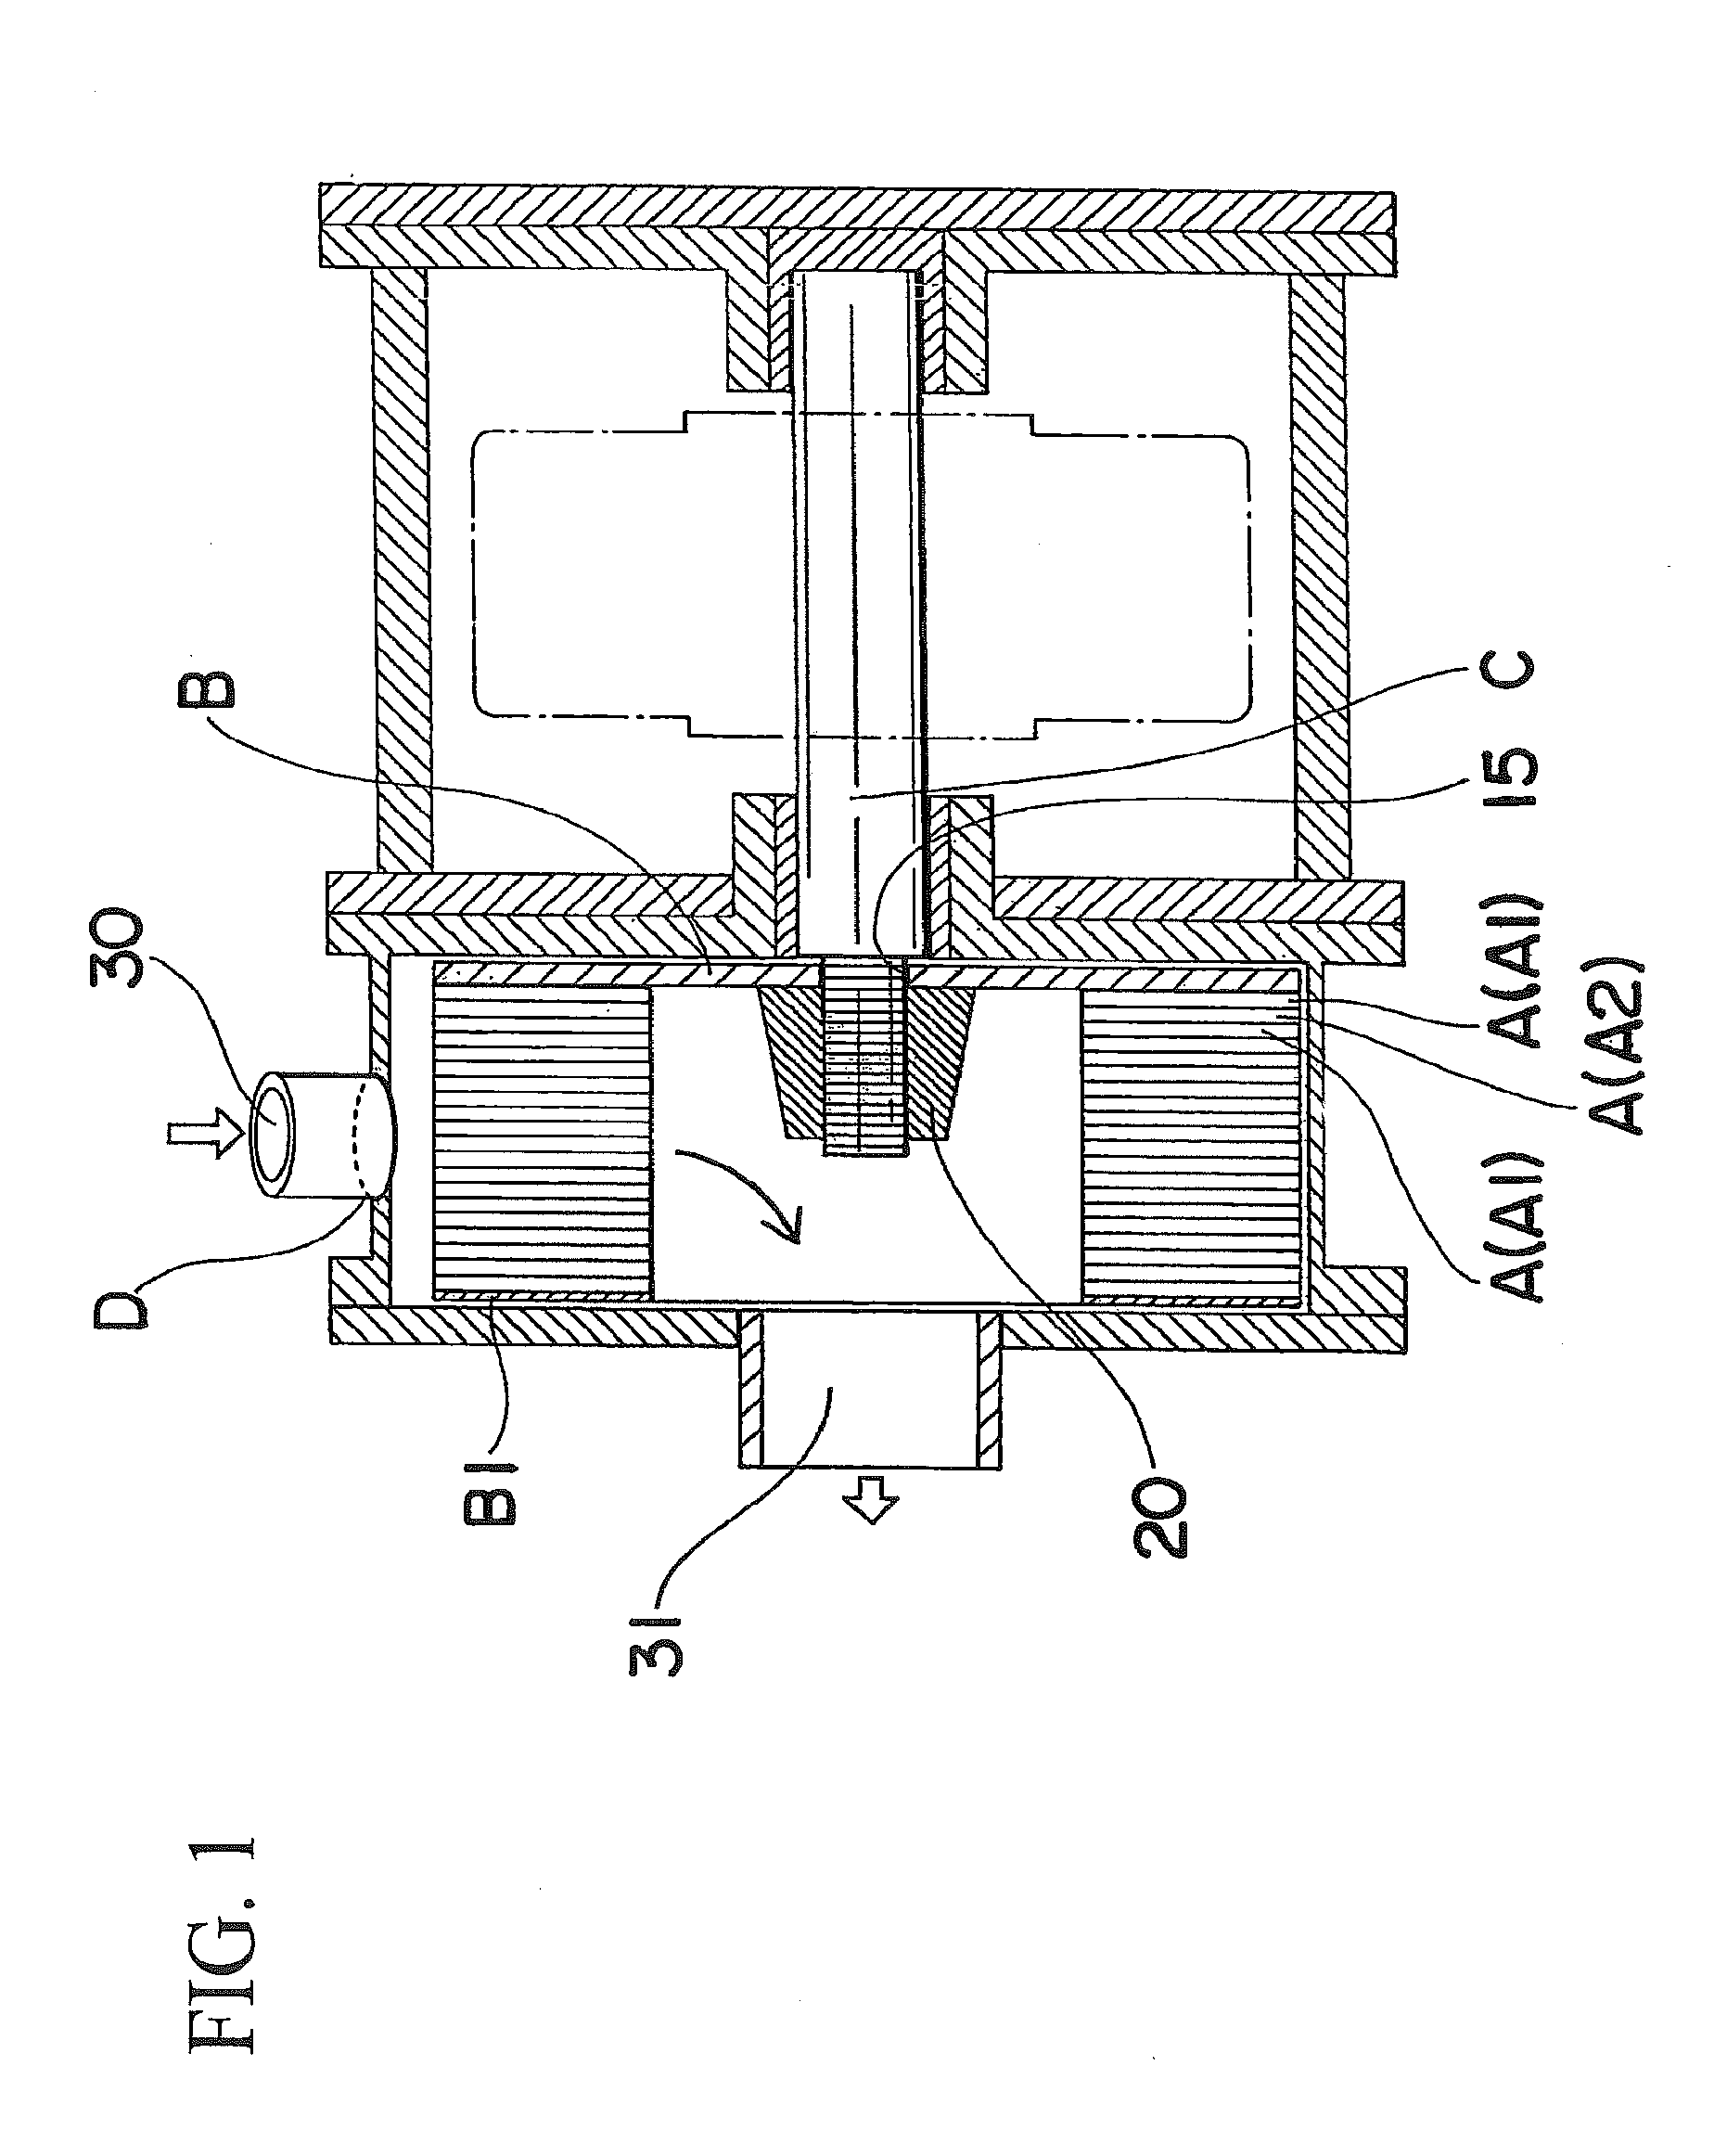 Impeller for turbine